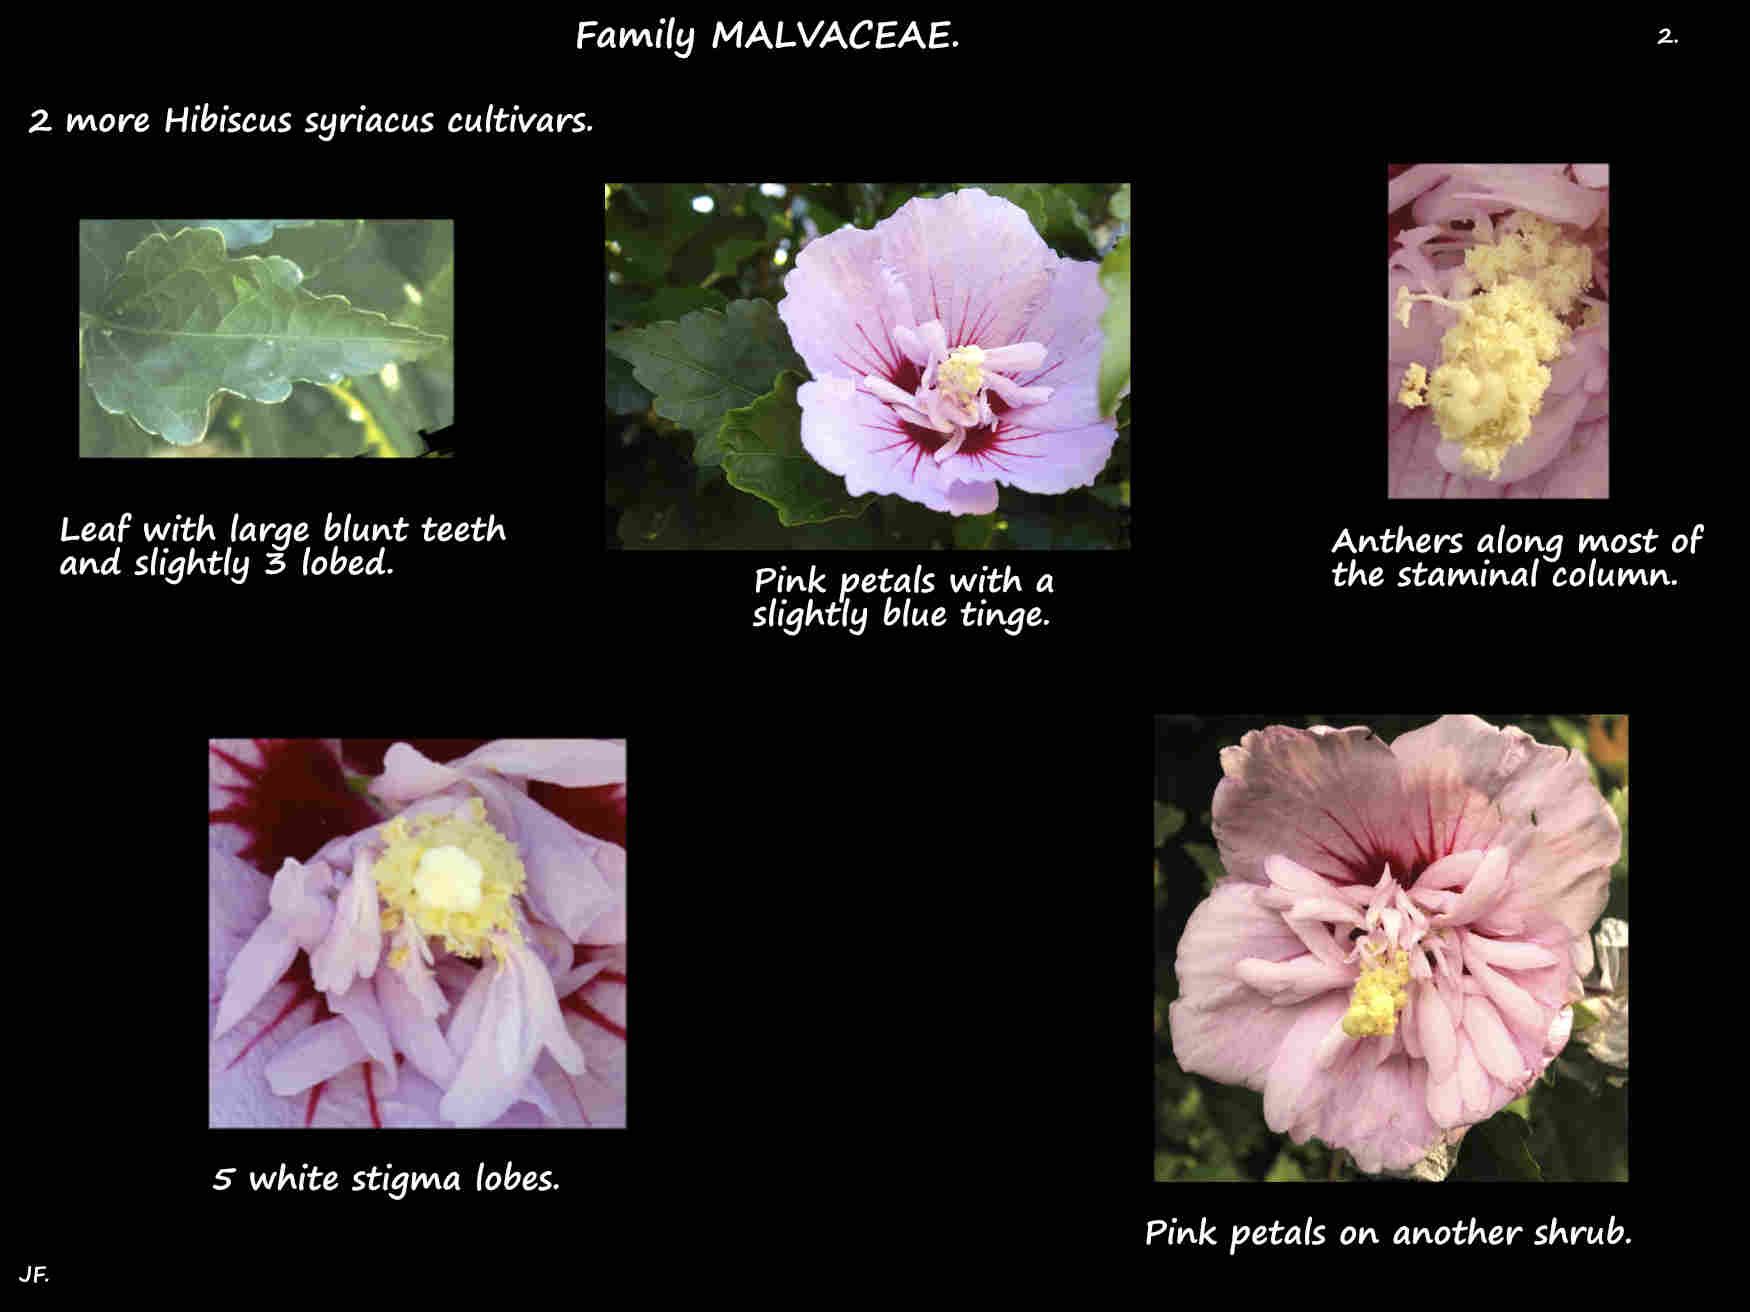 Hibiscus syriacus cultivars 2